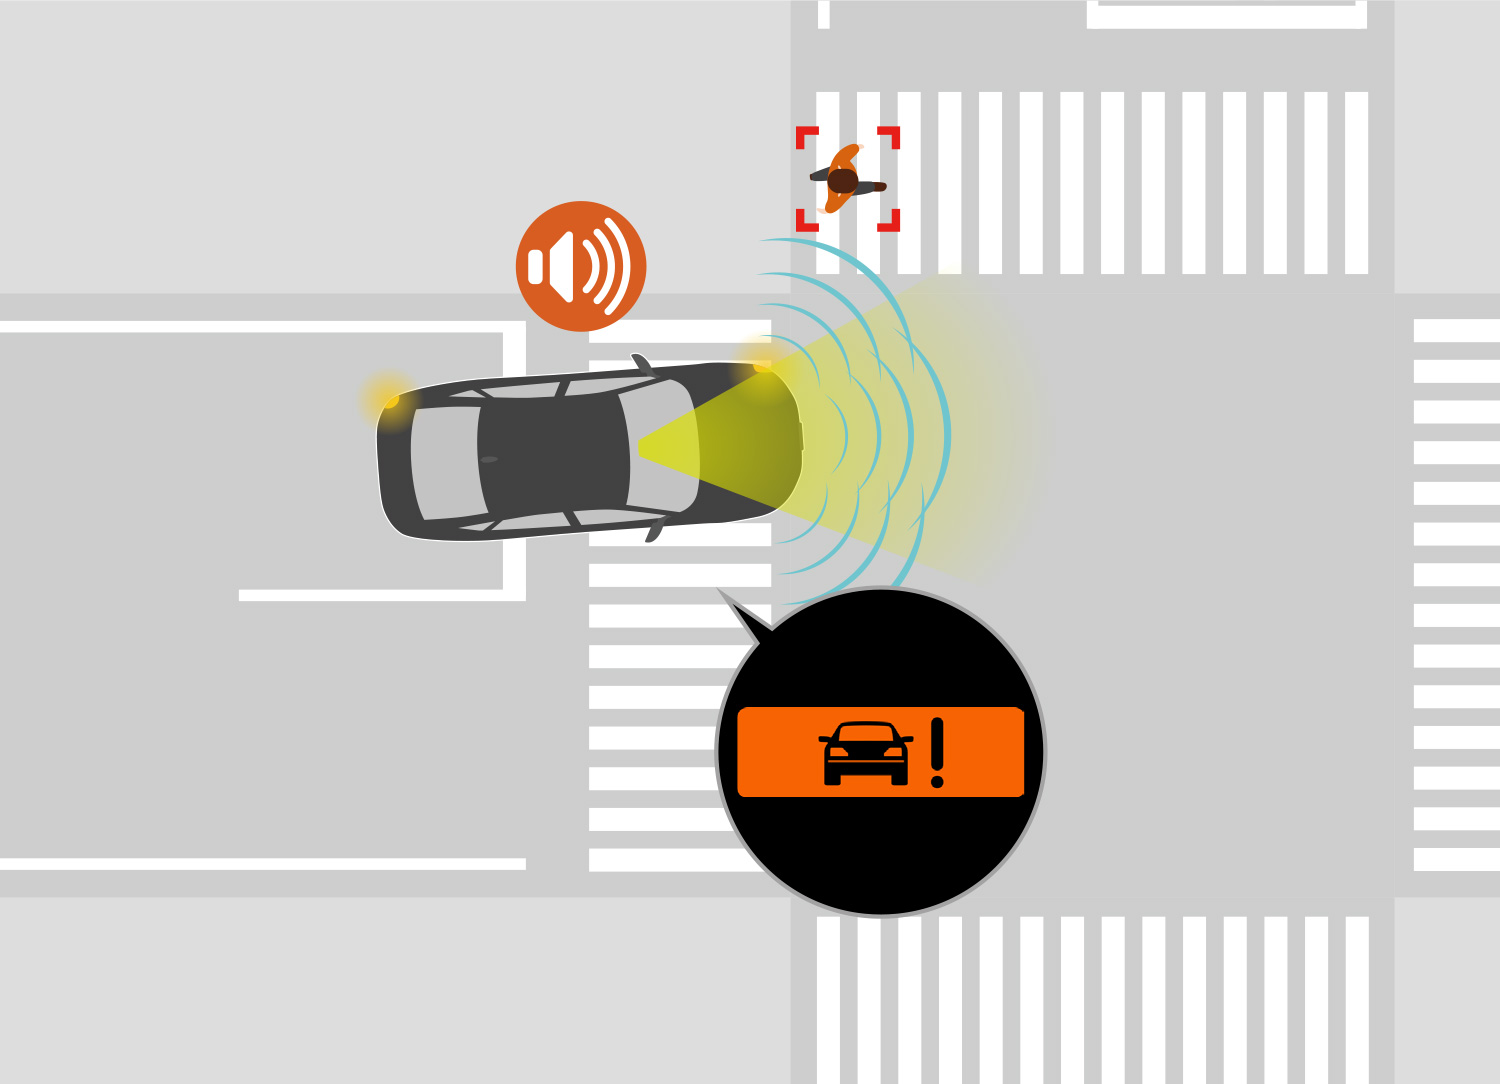 衝突するおそれがある場合、音とメーター内の表示によりドライバーへ注意喚起